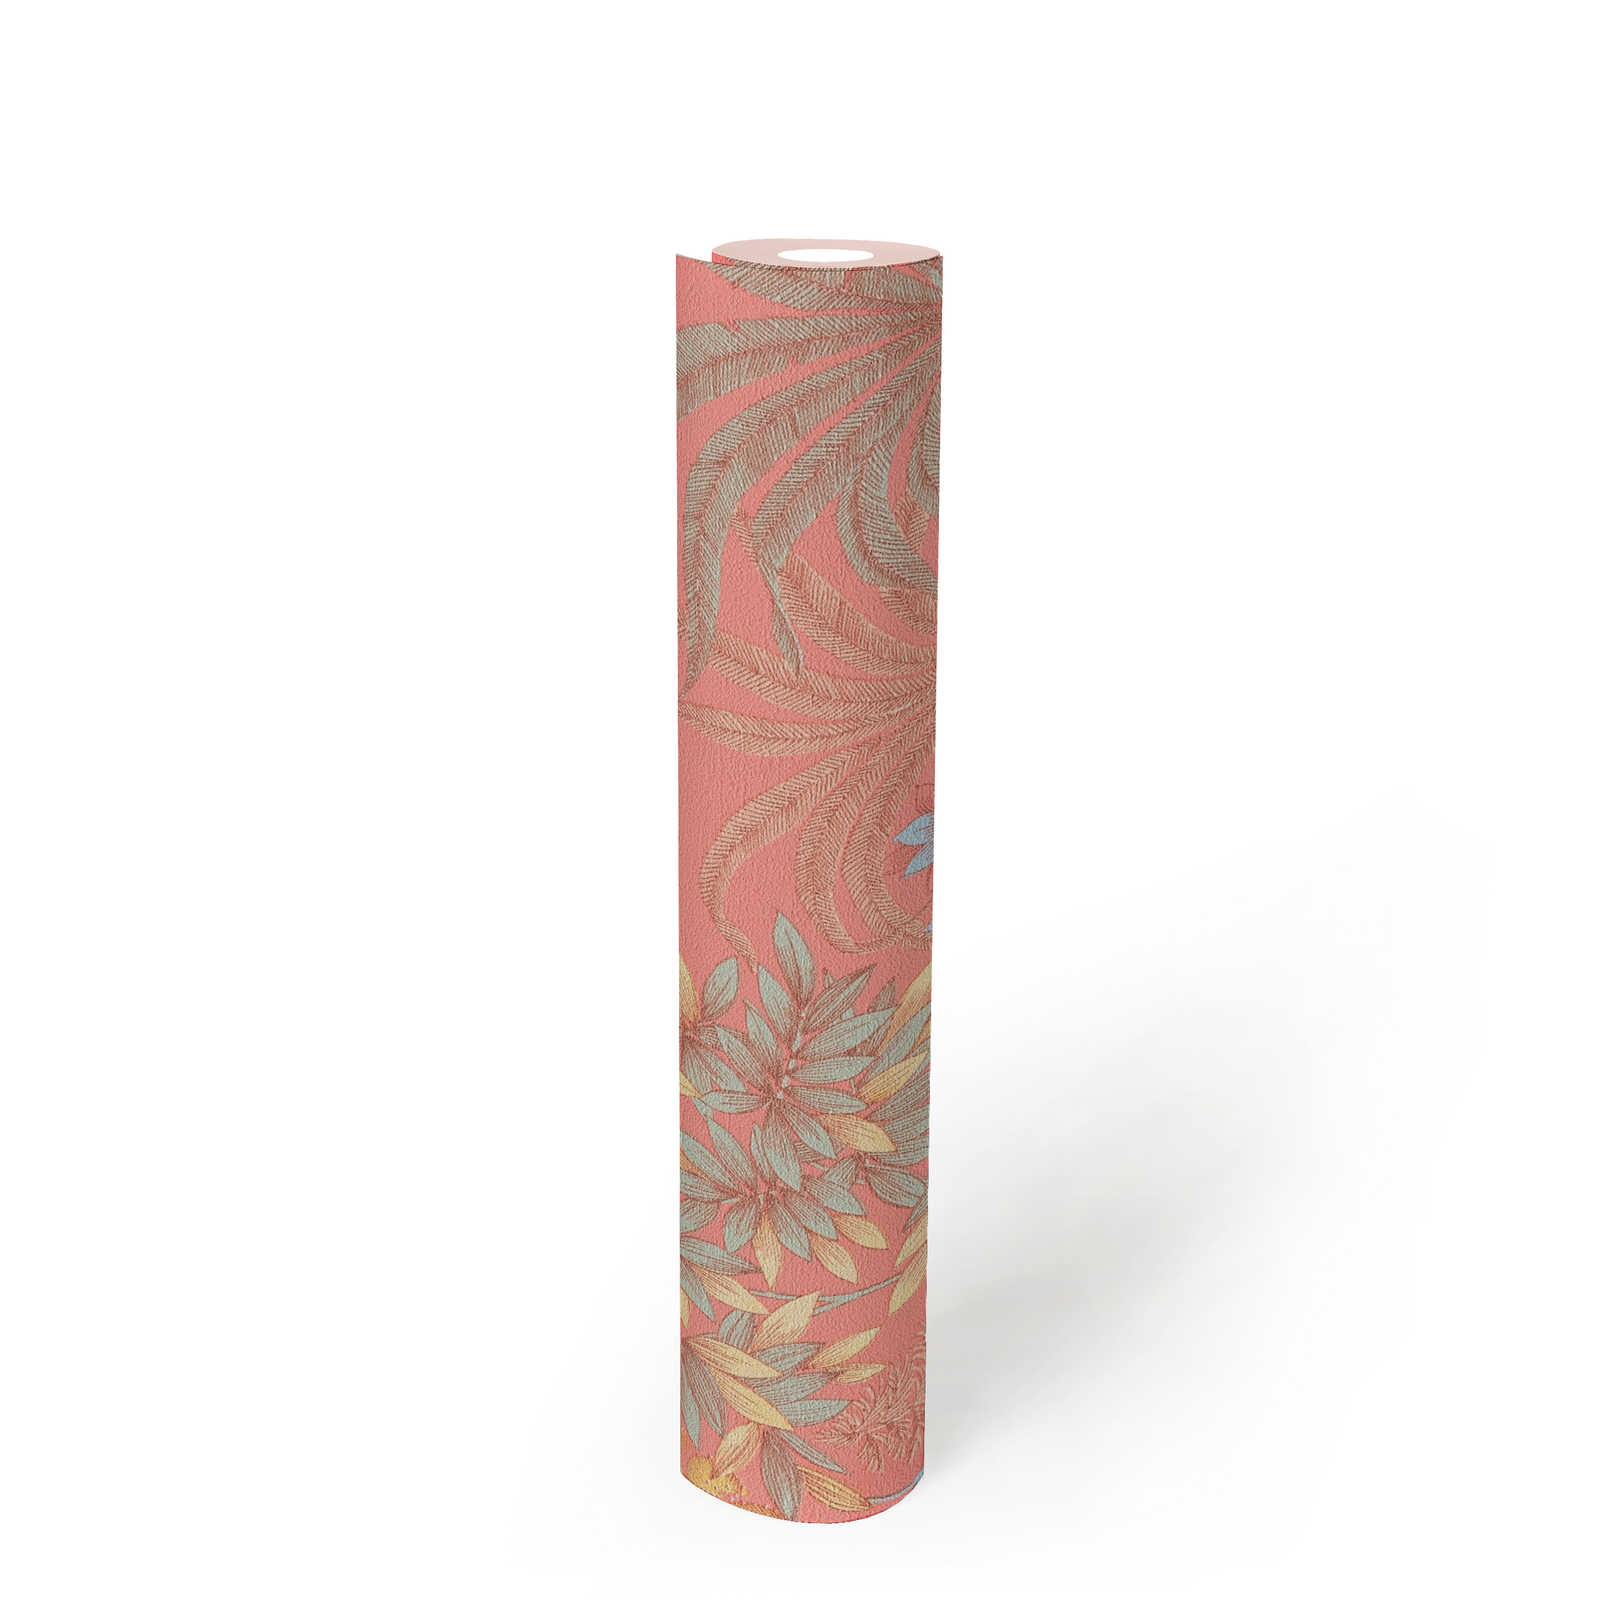             Papier peint fleuri ludique de couleur discrète - rose, bleu, jaune
        